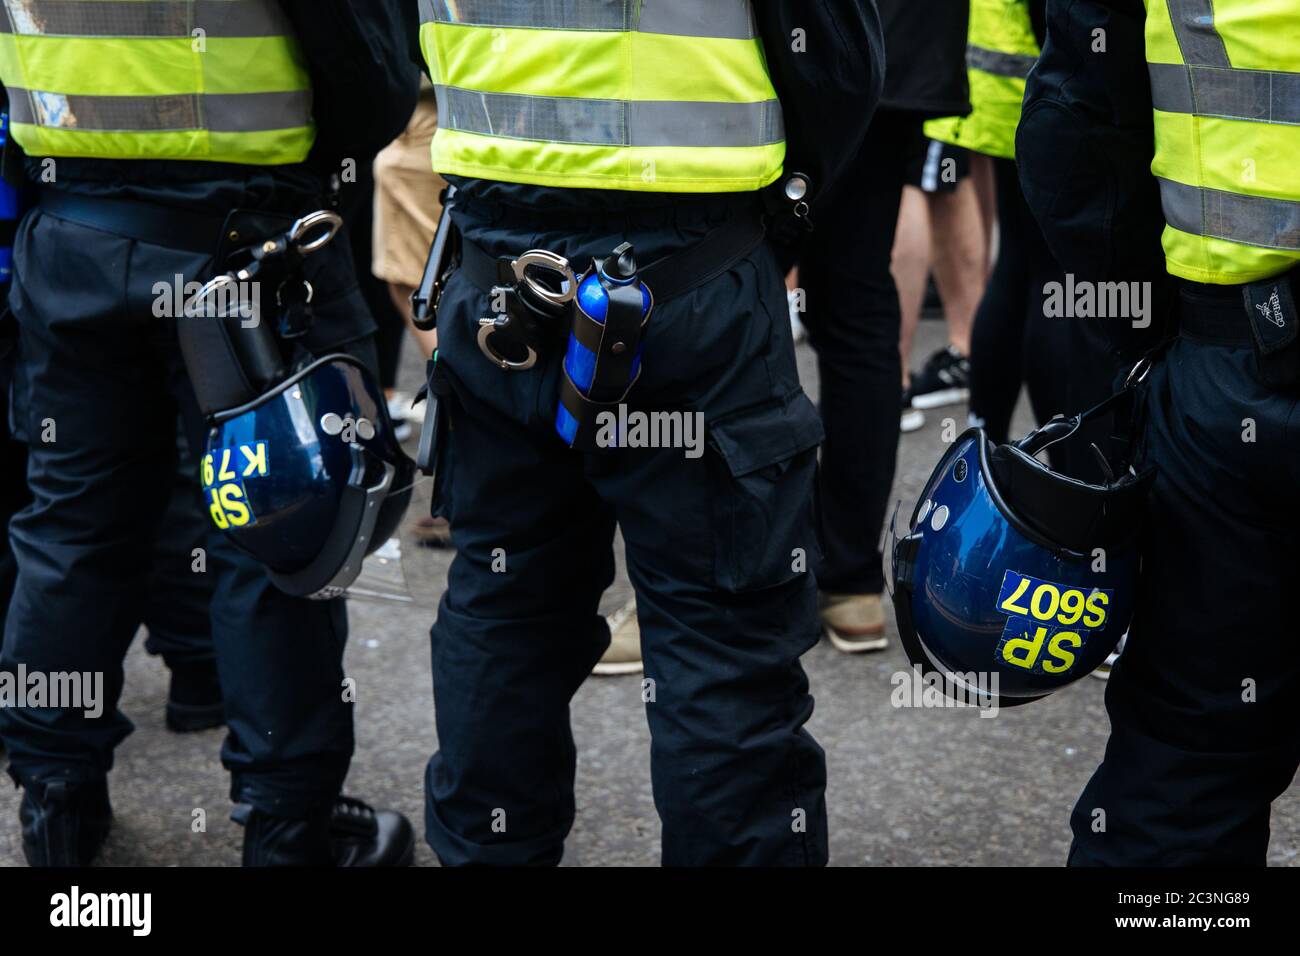 Dalla protesta antirazzista in risposta a violenti scontri a metà settimana a un raduno di accoglienza per i rifugiati. Una settimana prima dell'attacco di stabbing a Glasgow. Foto Stock